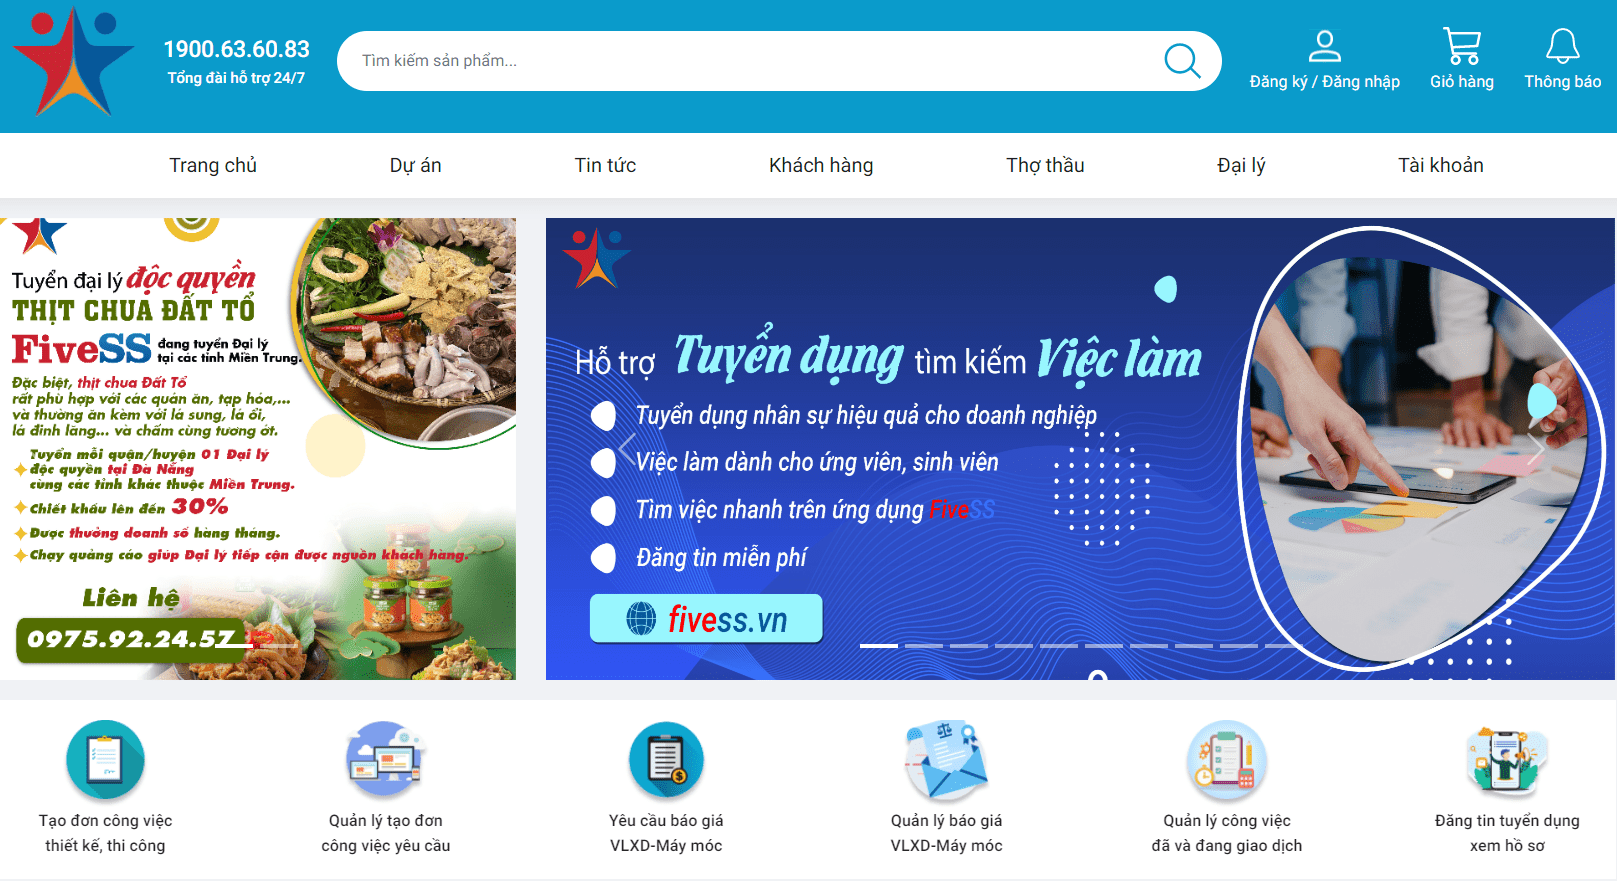 Công Ty Tân Phú Thành